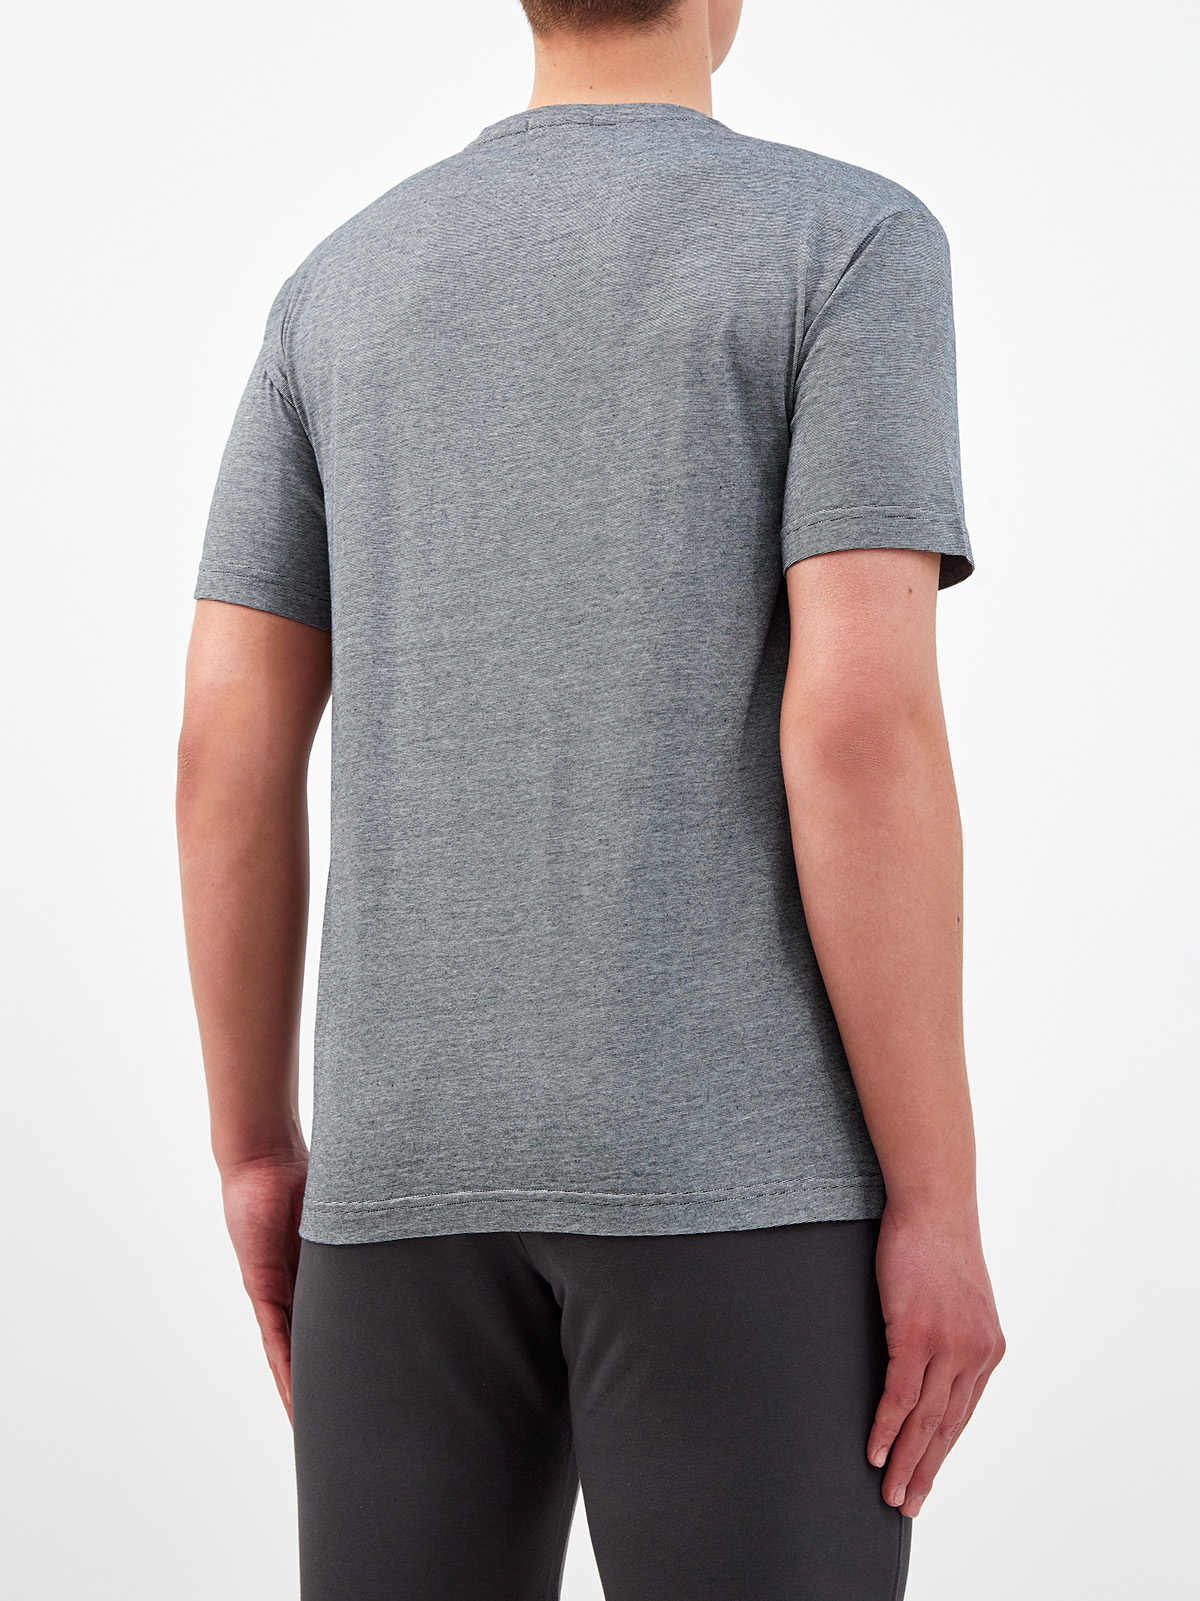 Хлопковая футболка с переплетением серых и белых волокон CUDGI, цвет серый, размер L;XL;2XL;4XL;5XL - фото 4